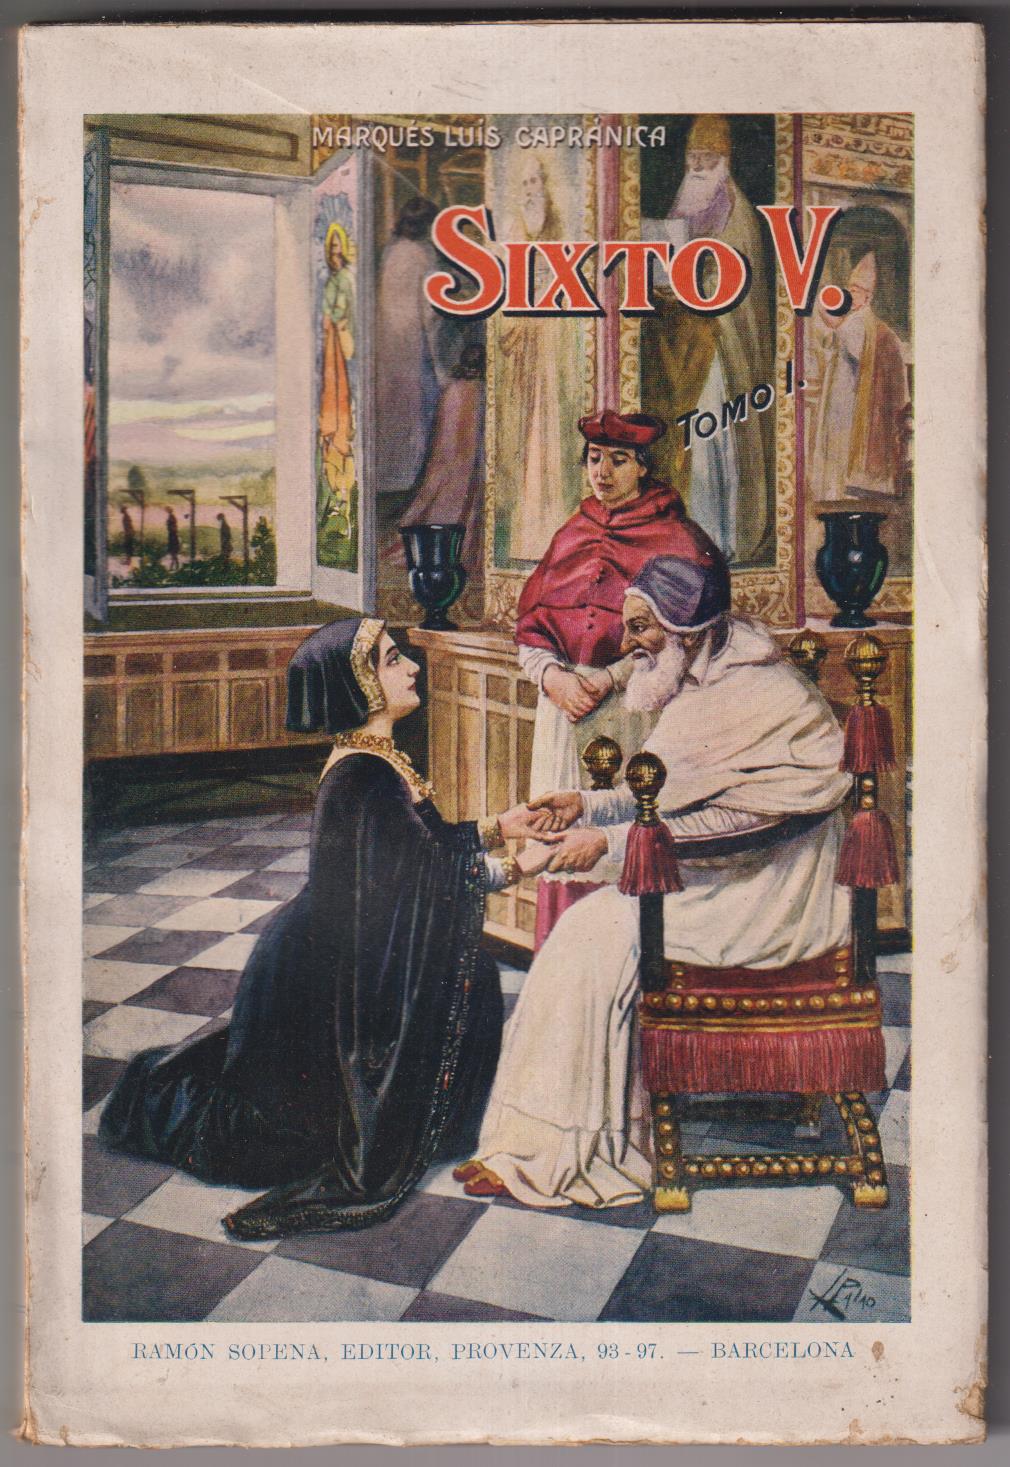 Marqués Luis Capránica. Sixto V. Tomo I. Biblioteca de Grandes Novelas. Sopena (1930)